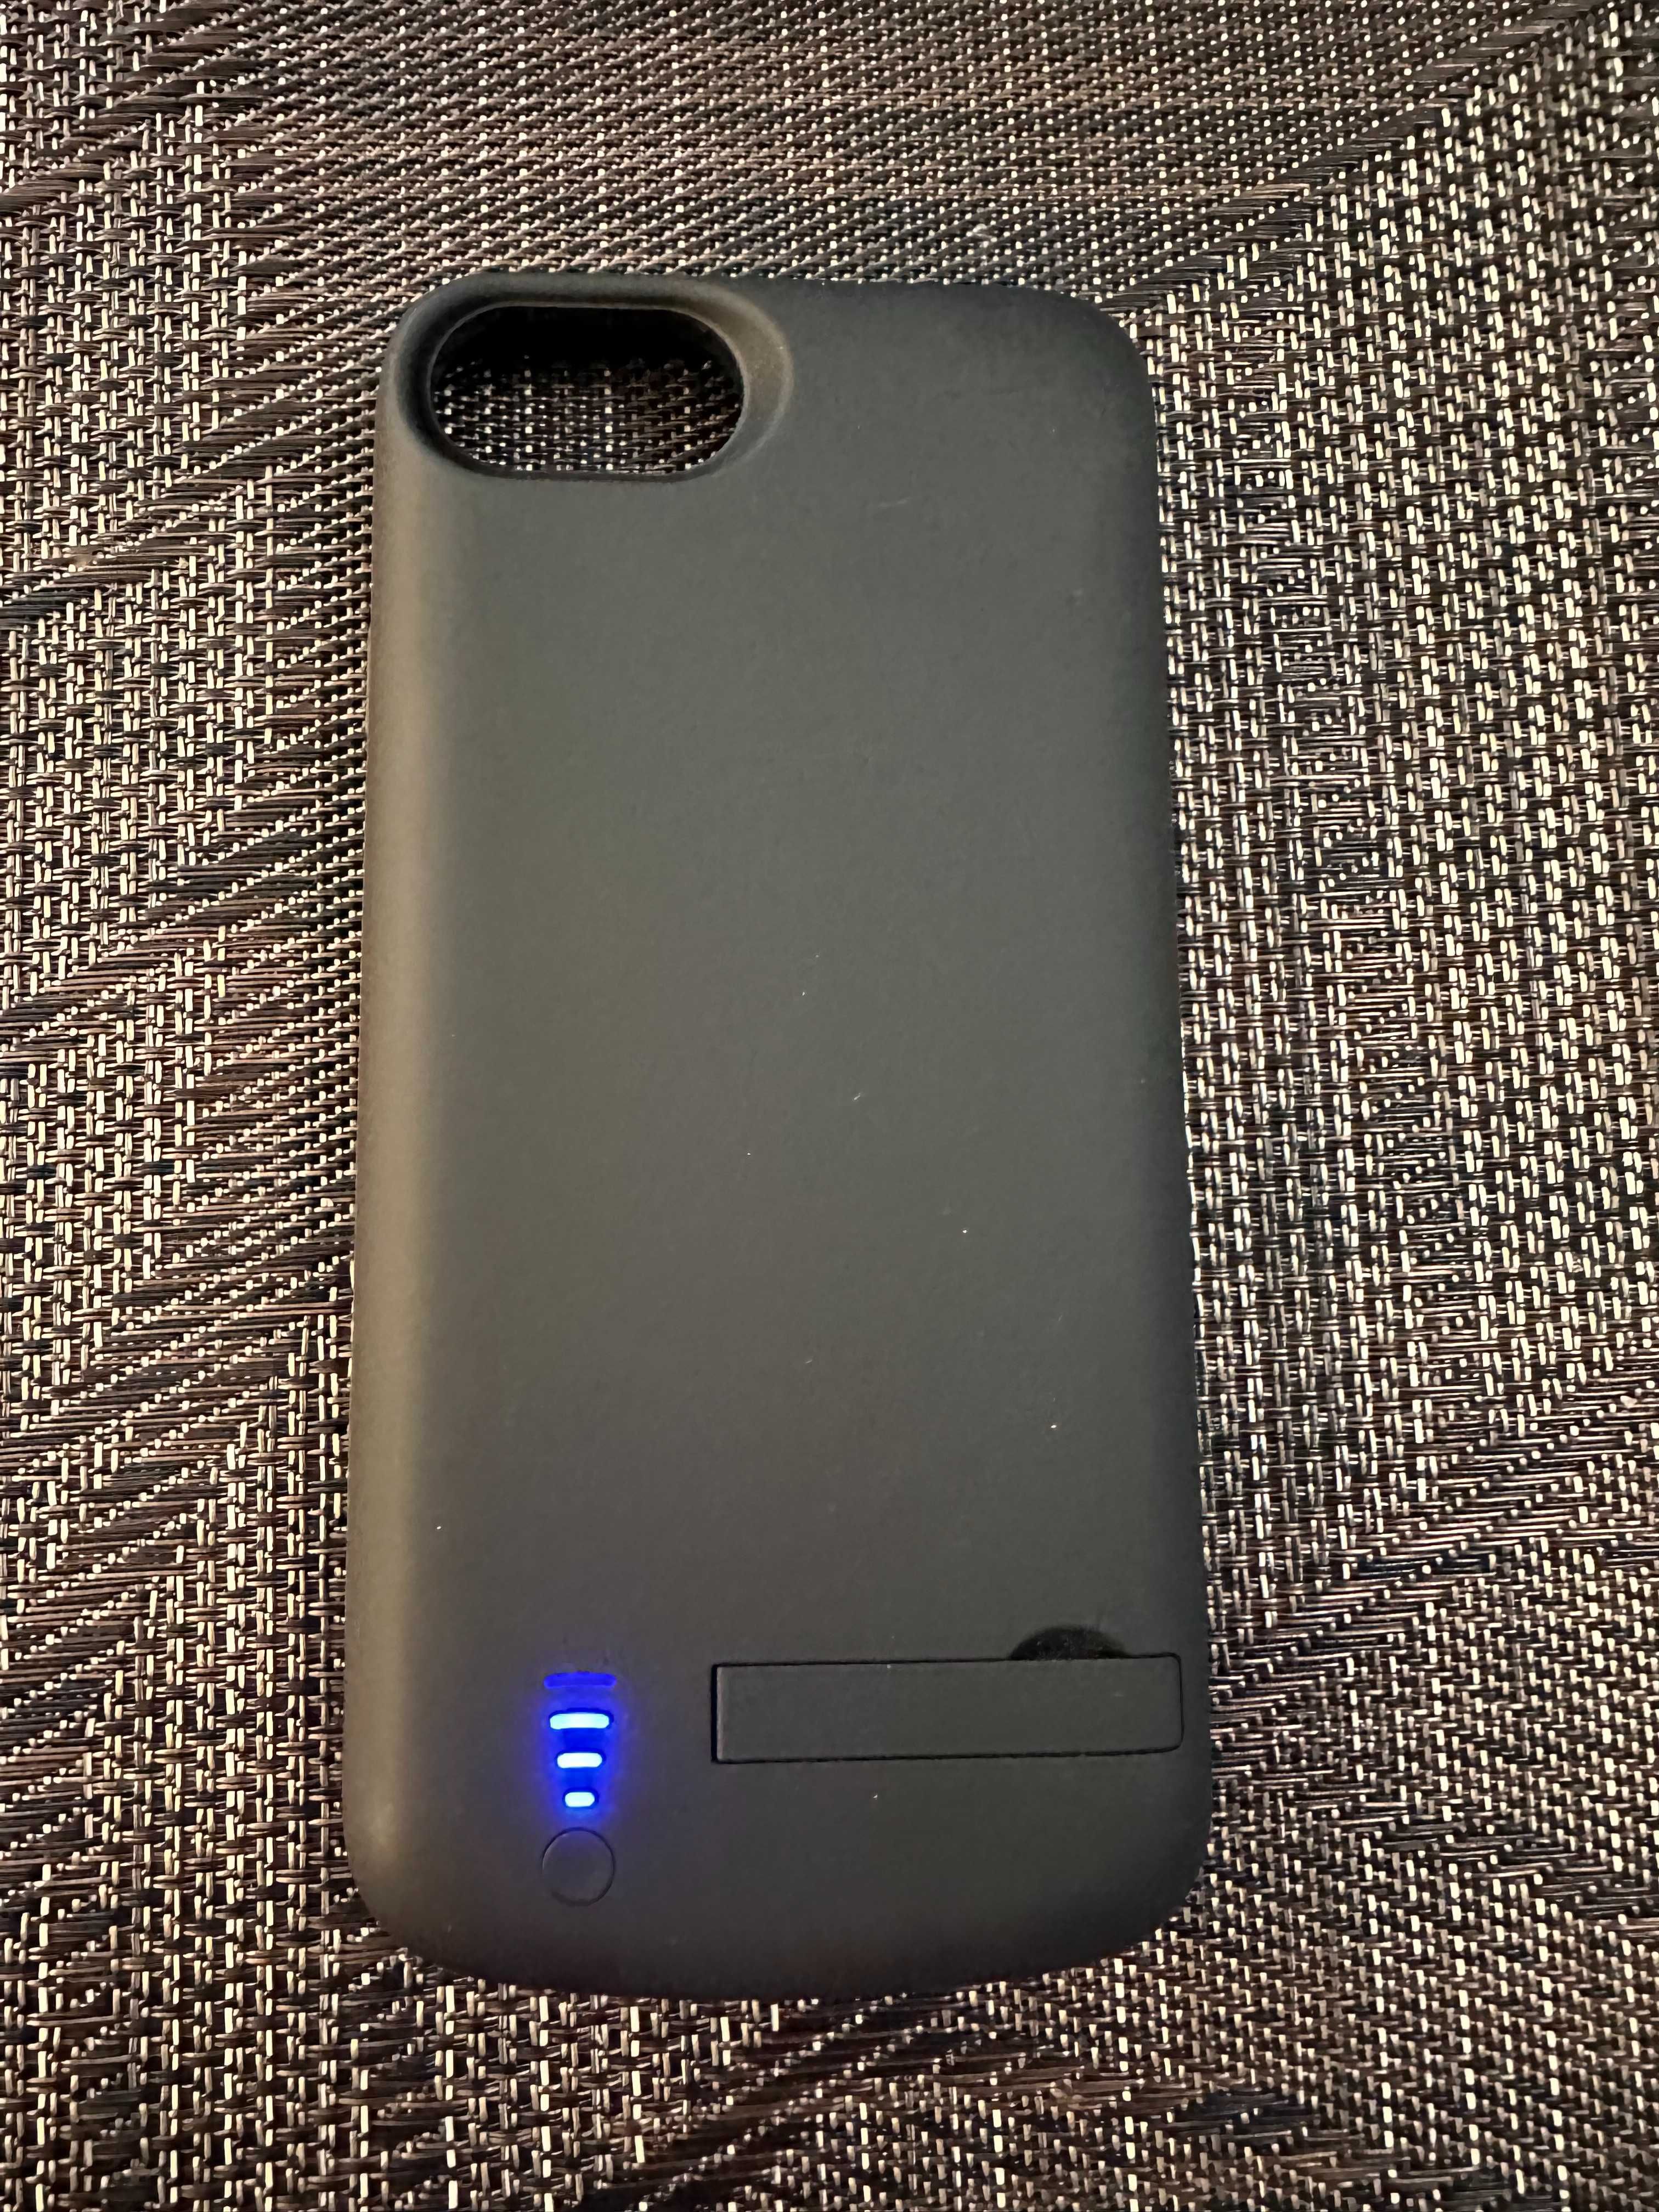 Battery case за Iphone от 8 до se3